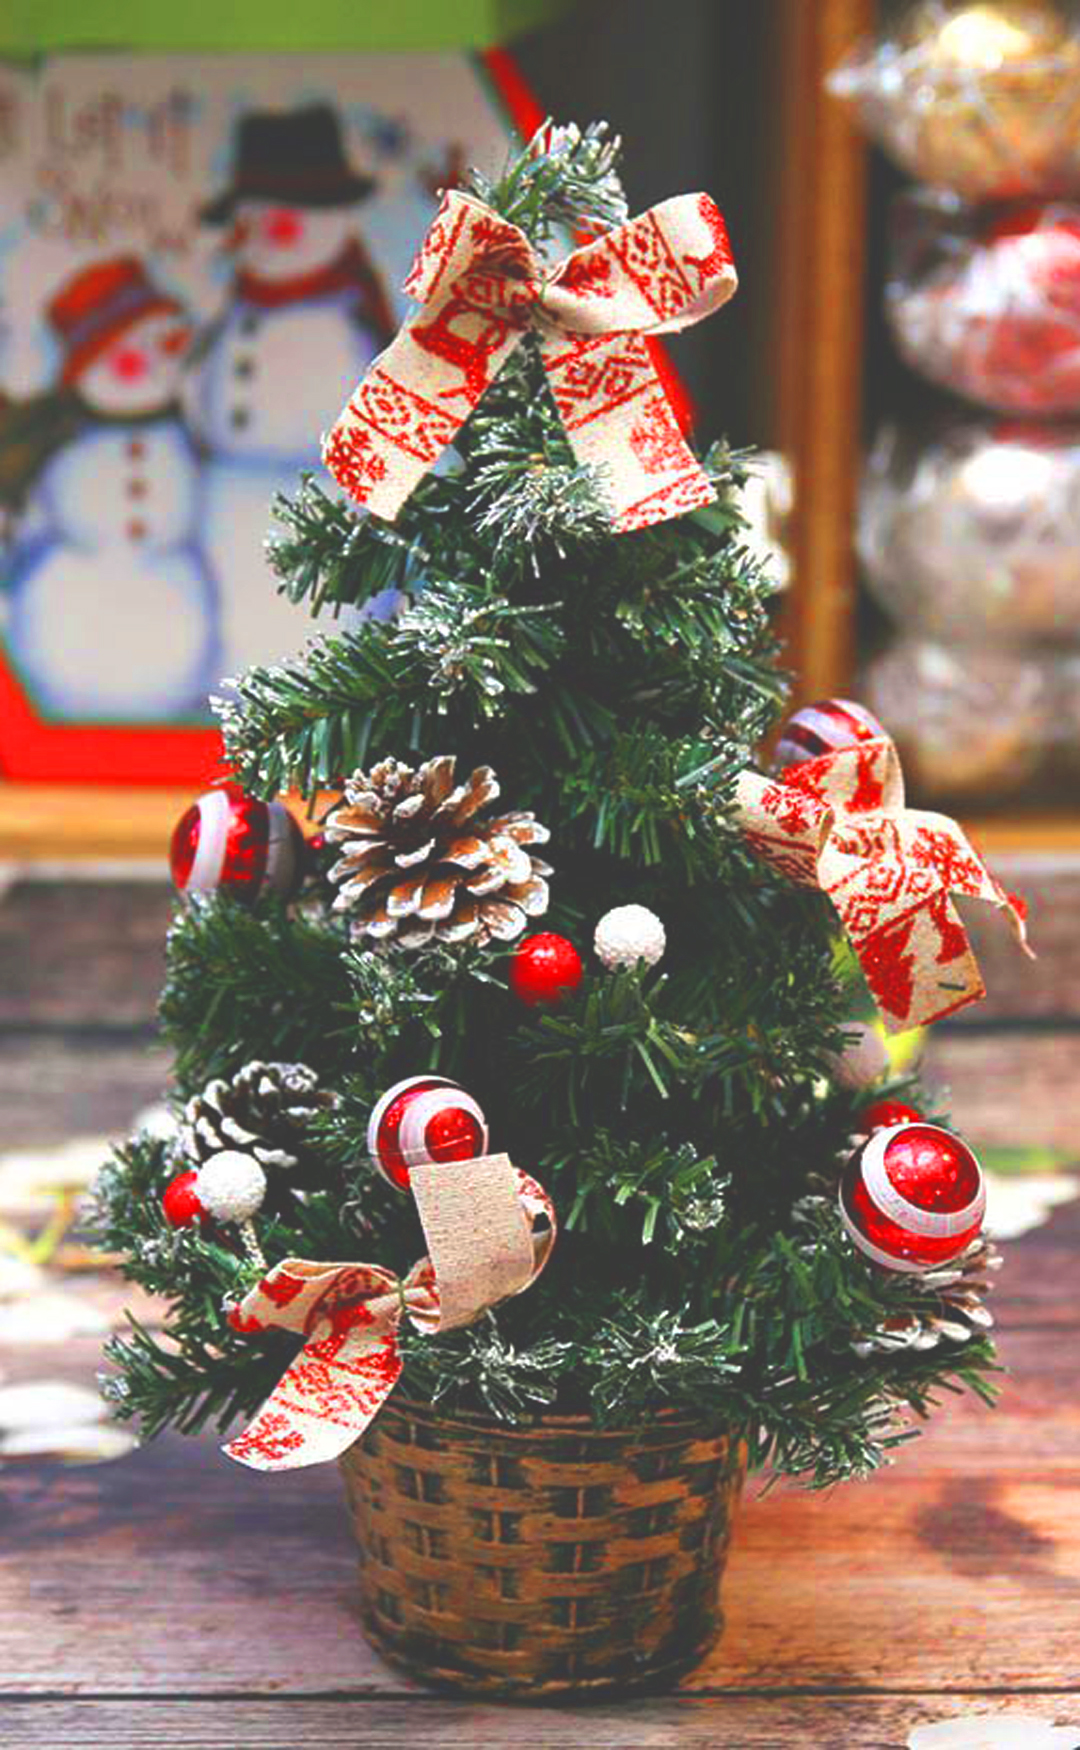 Ánh sáng và sắc đỏ của cây thông Noel đang chờ đón bạn trong bức tranh ảnh đẹp nhất. Với tất cả số lượng cây thông Noel đầy sức sống, chúng tôi đã tạo ra nét độc đáo và giản đơn một cách tinh tế để dẫn đến một không gian tràn ngập không khí Giáng sinh.